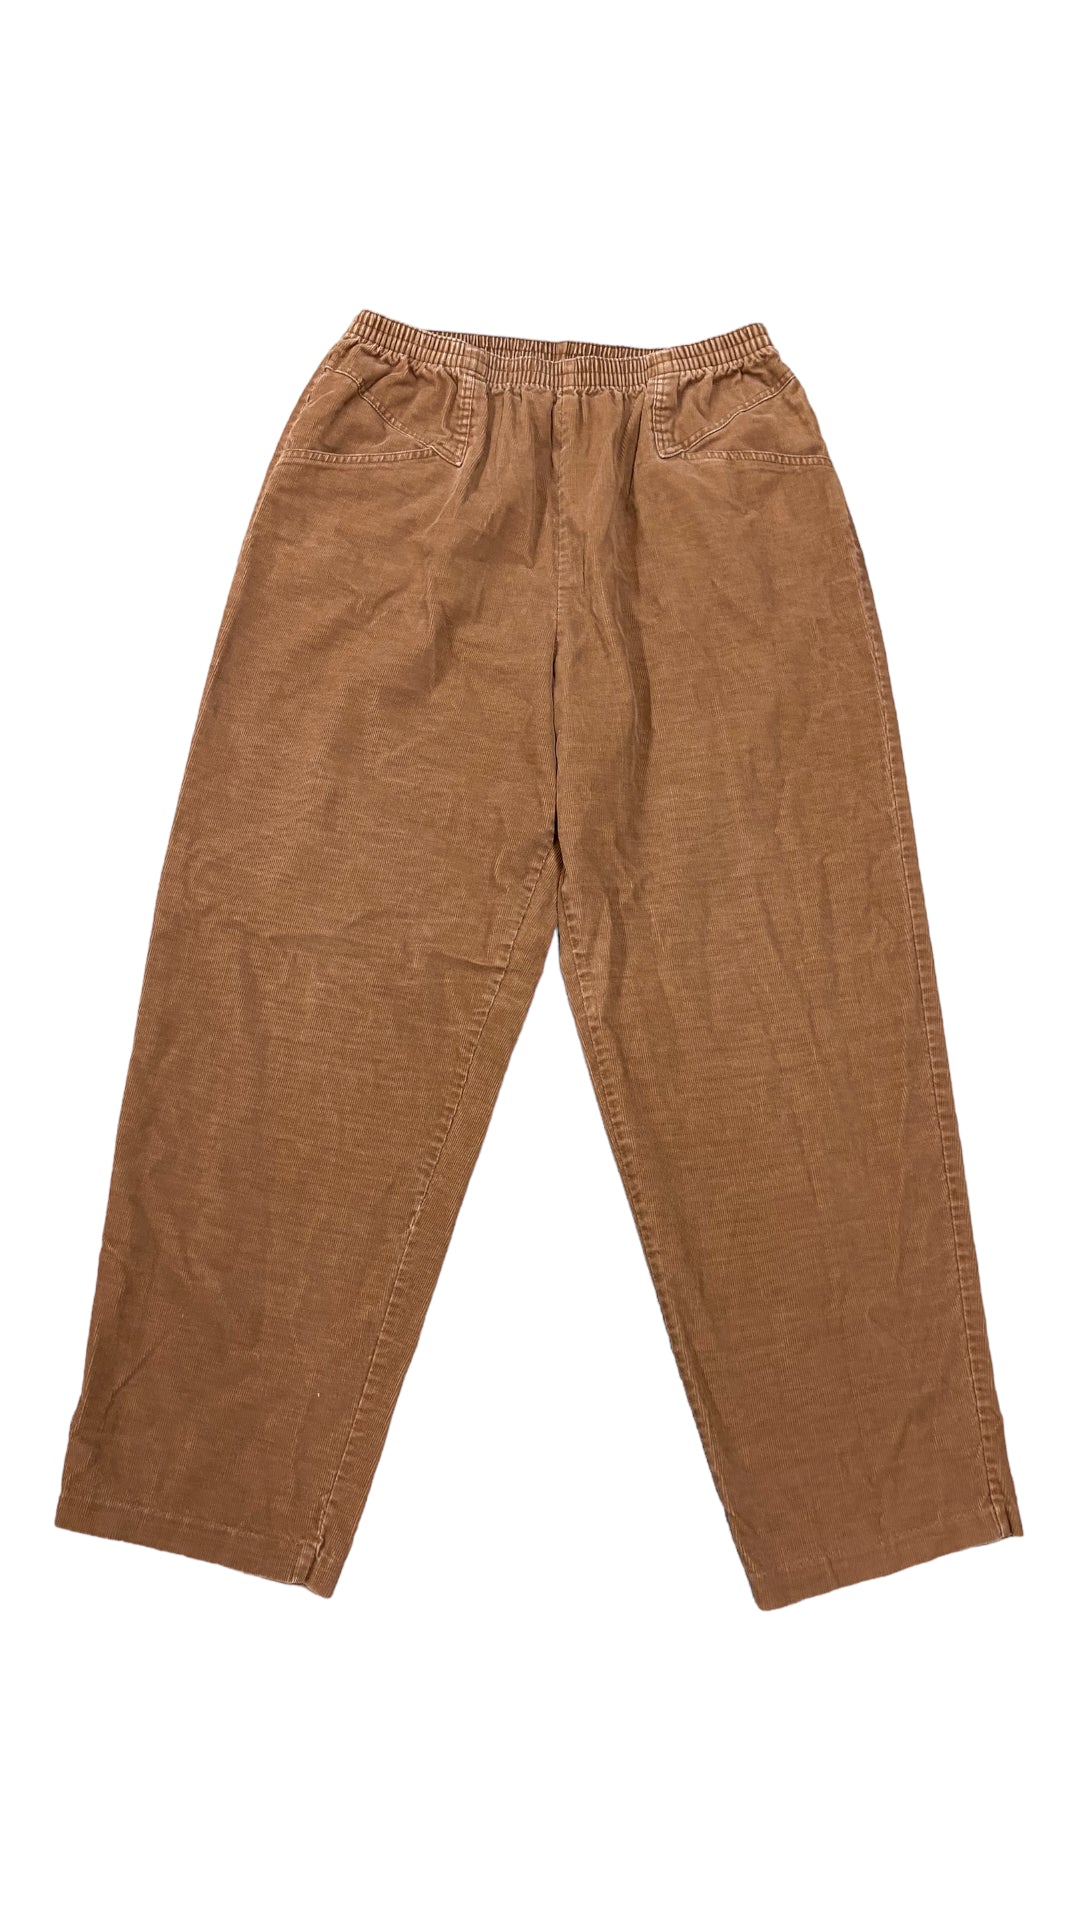 VTG Levi's Brown Corduroy Stretch Pants Sz 32